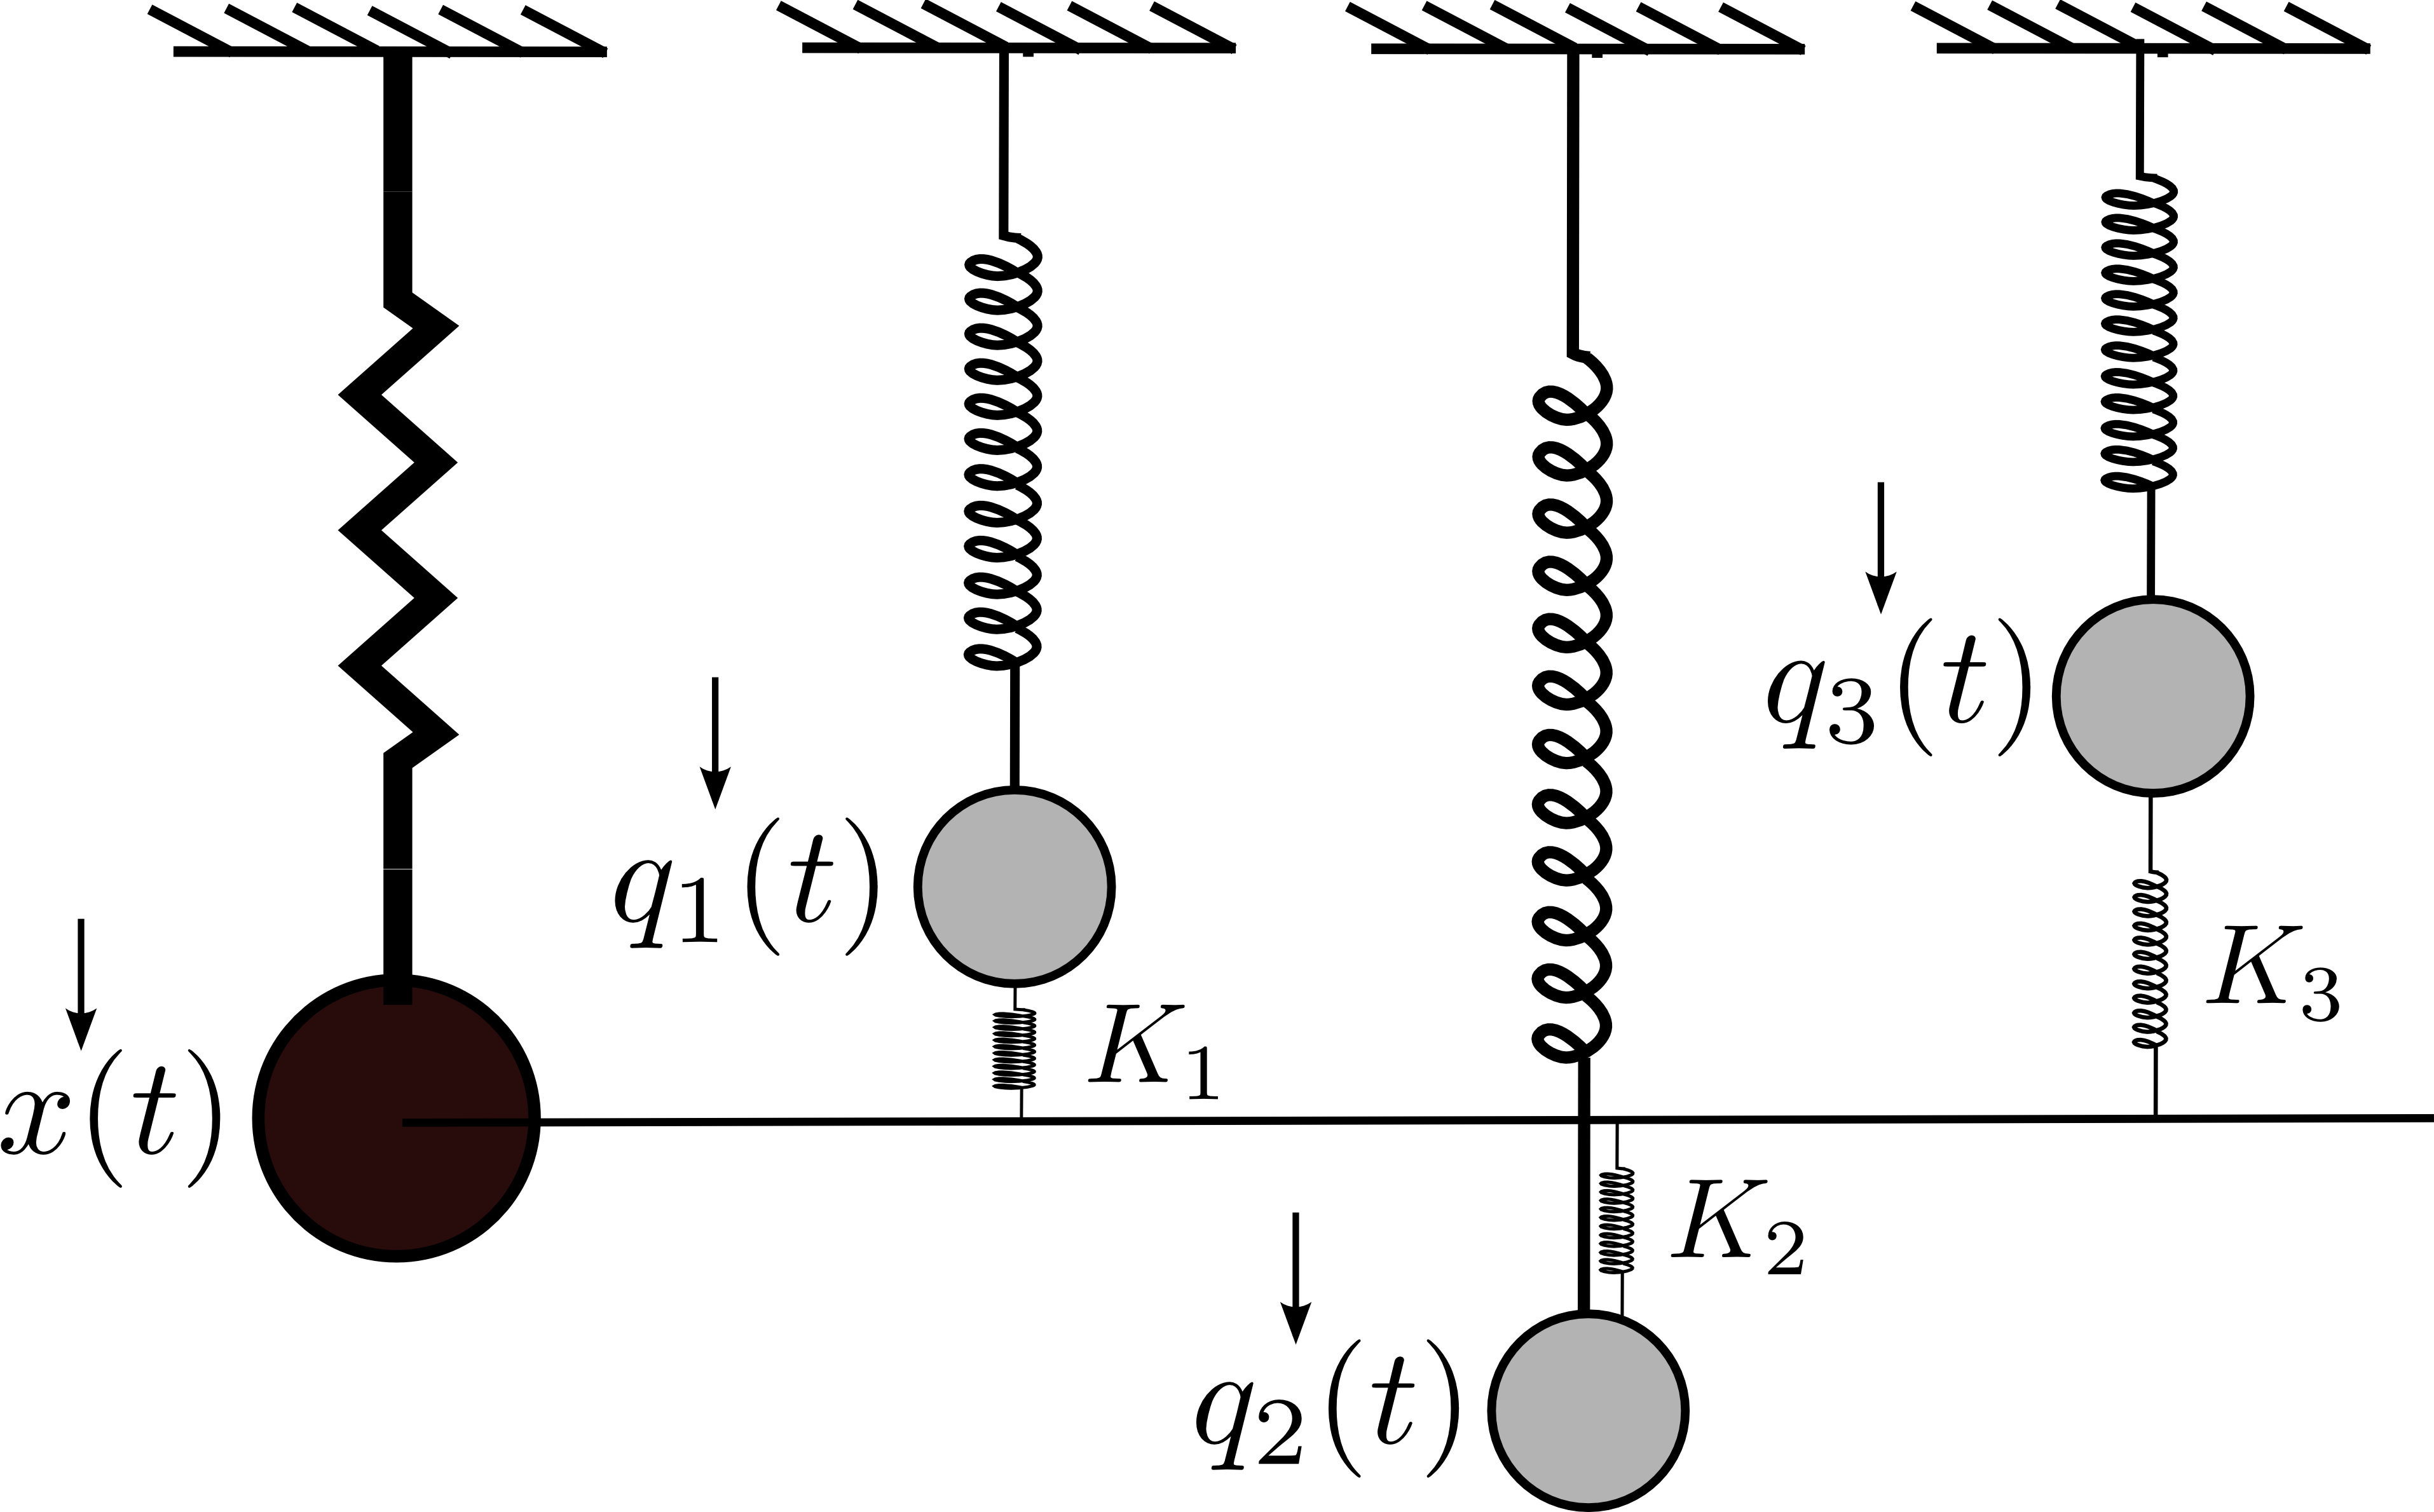 Caldeira-Leggett system